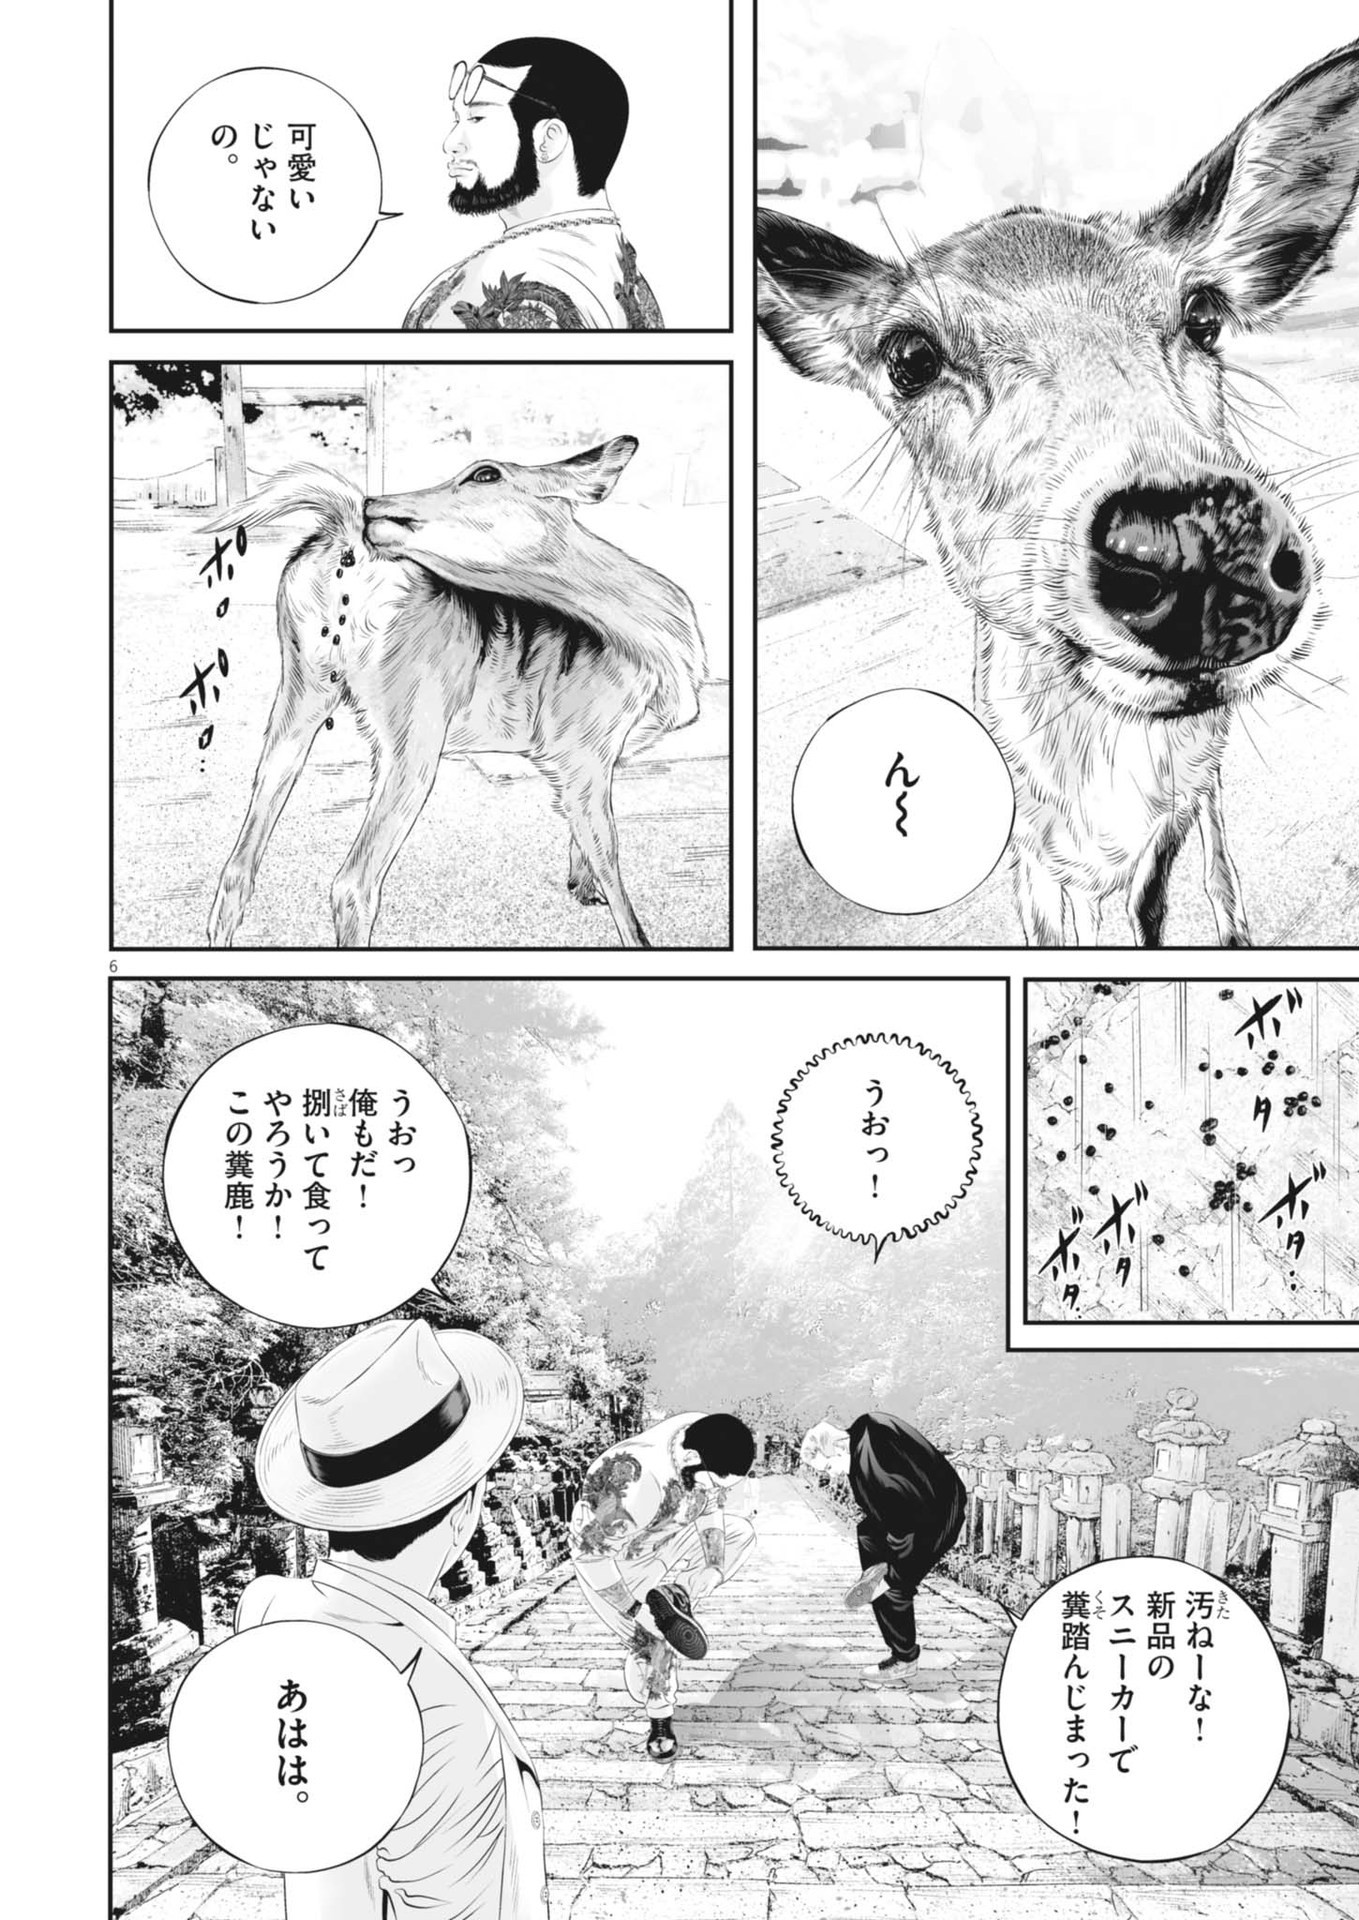 Kujou no Taizai - Chapter 105 - Page 6